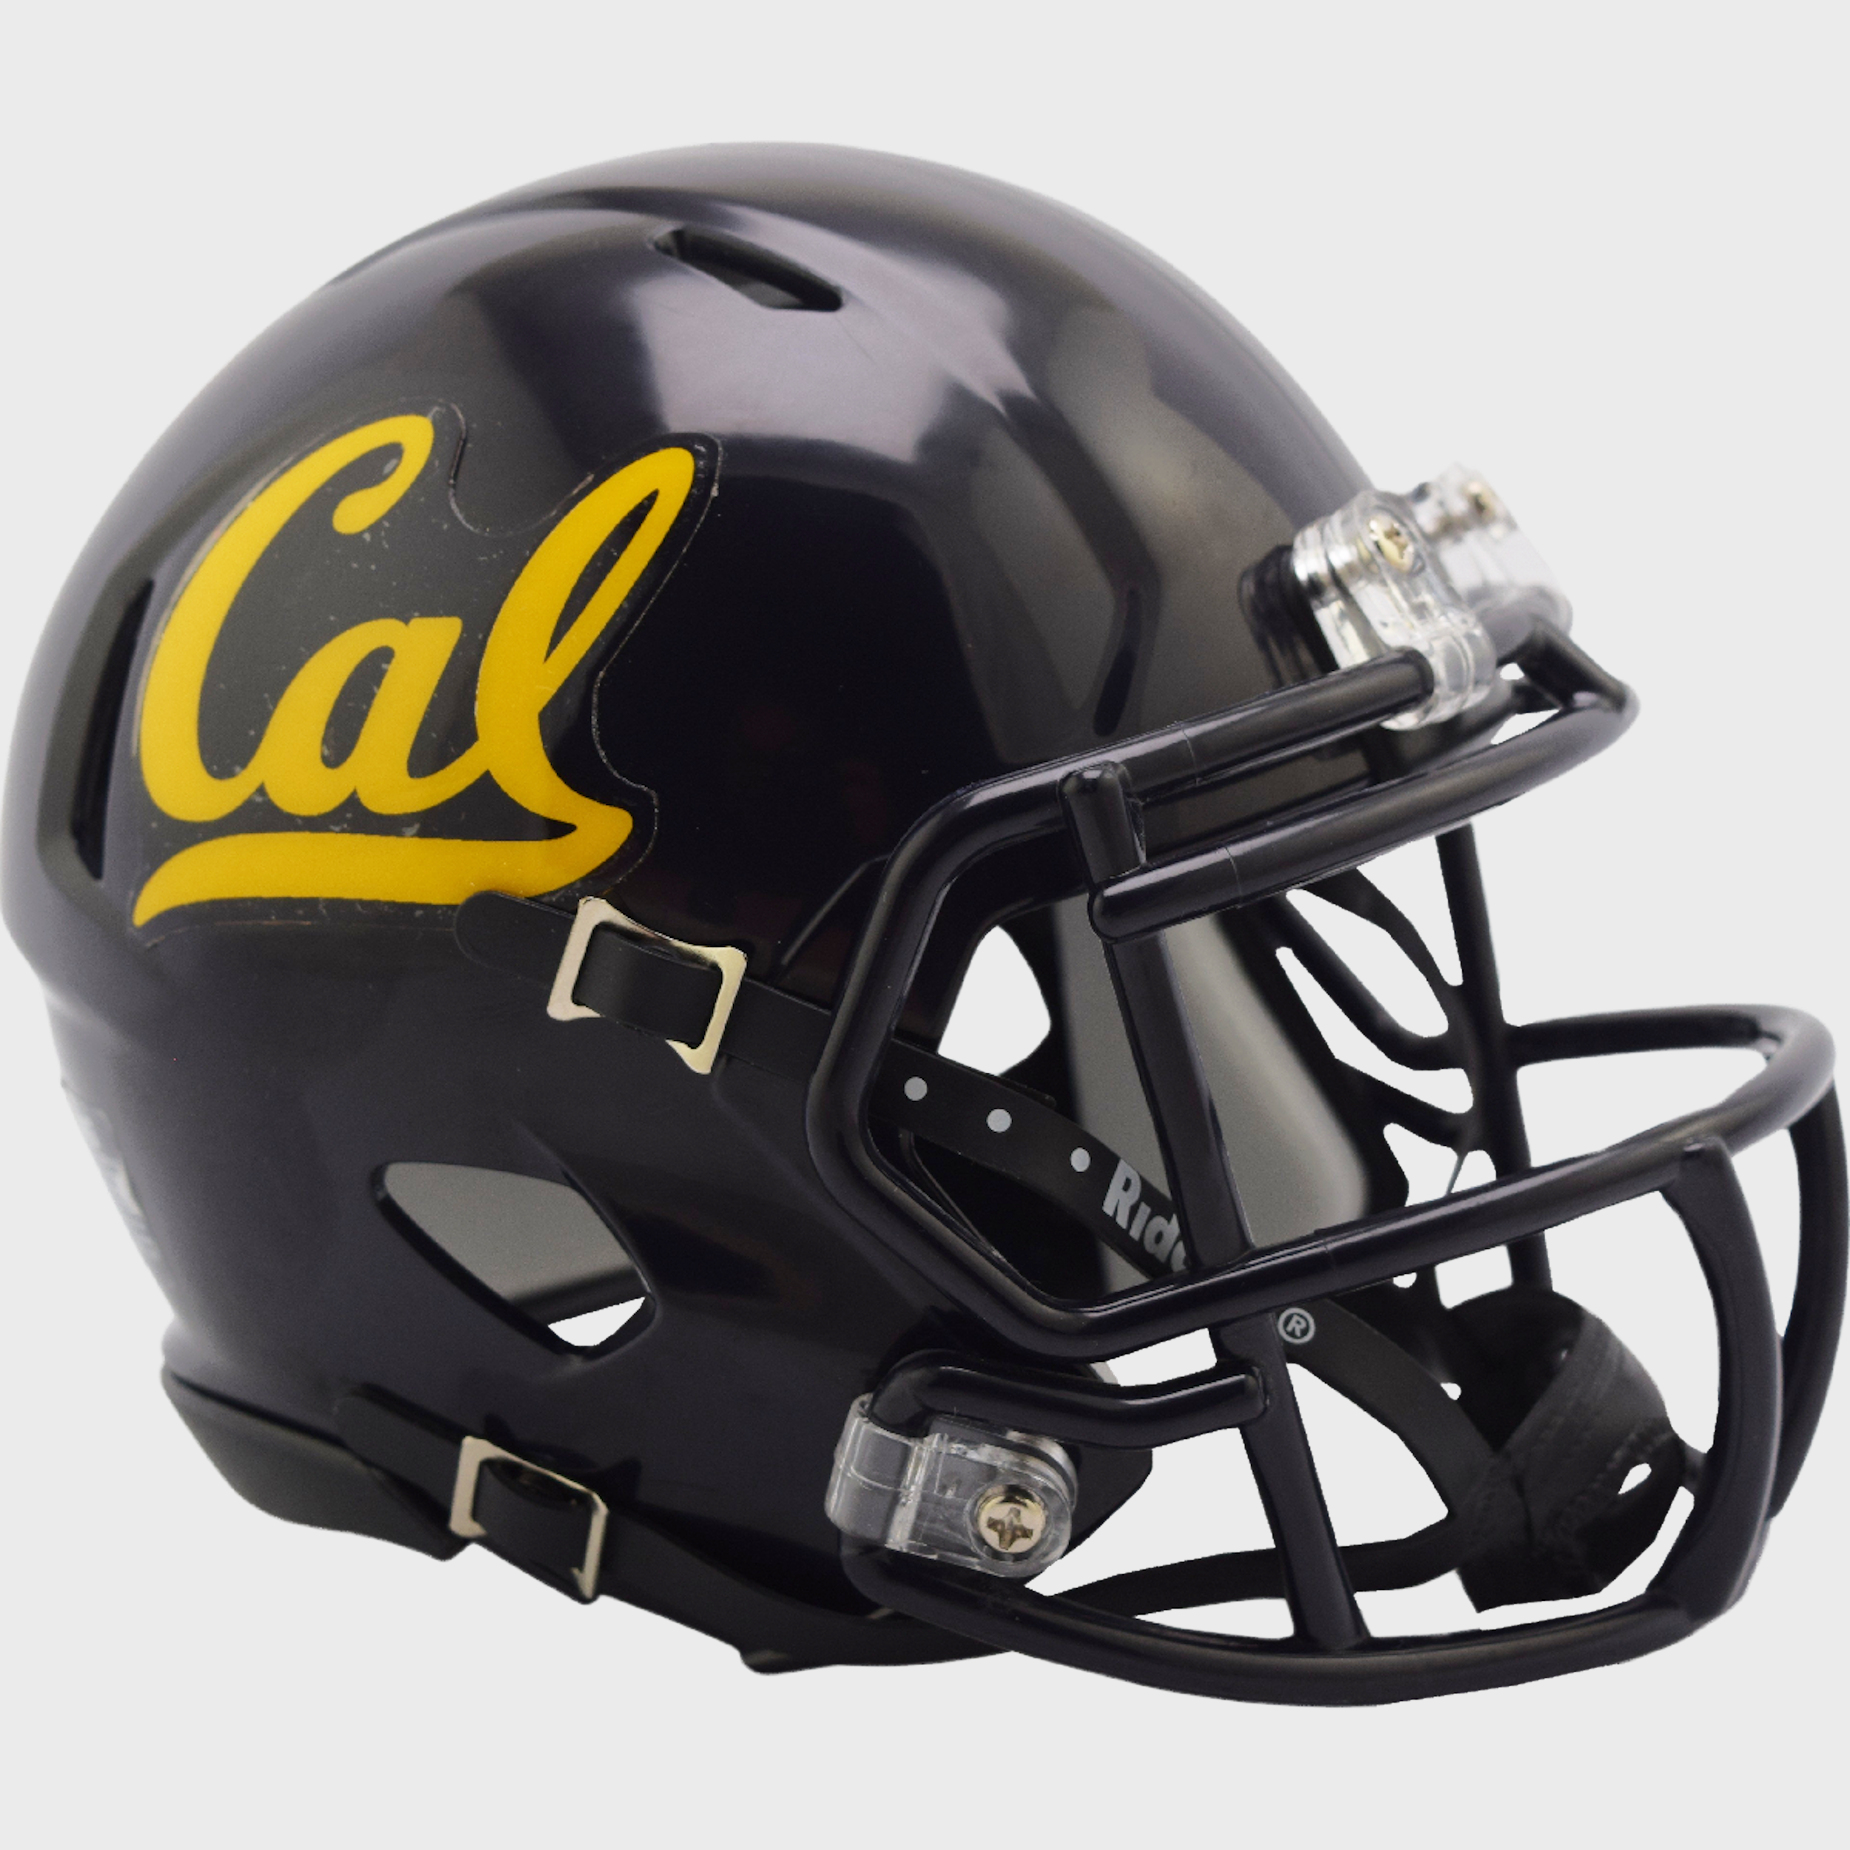 California Golden Bears mini helmet